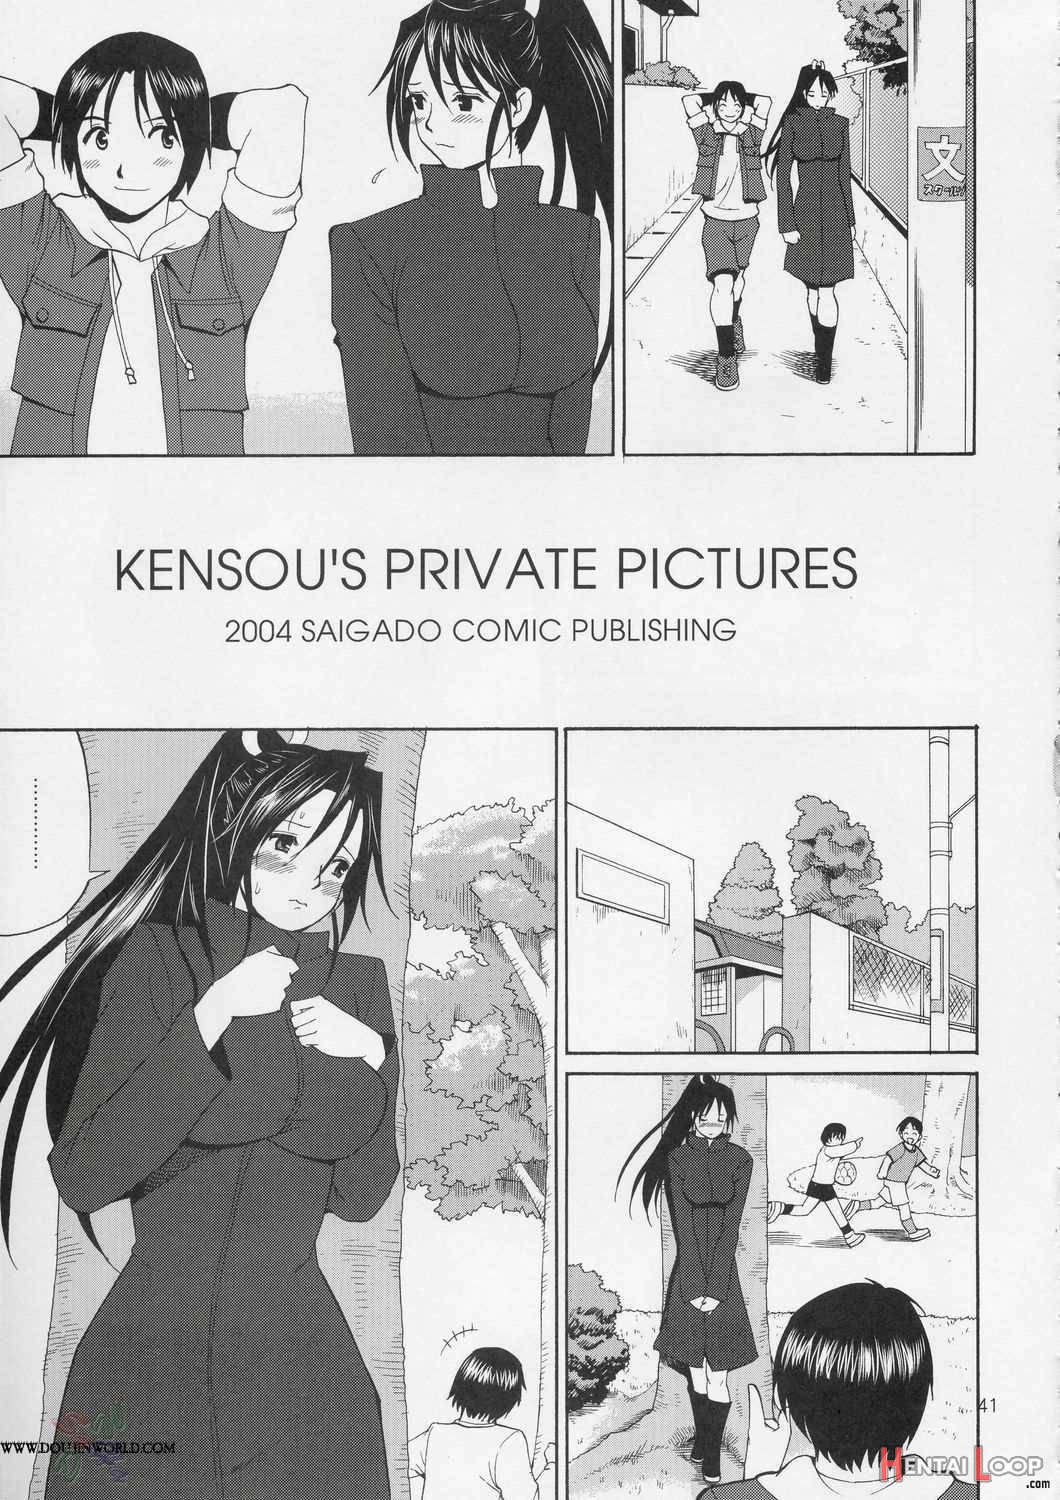 The Yuri&Friends Hinako-Max page 40